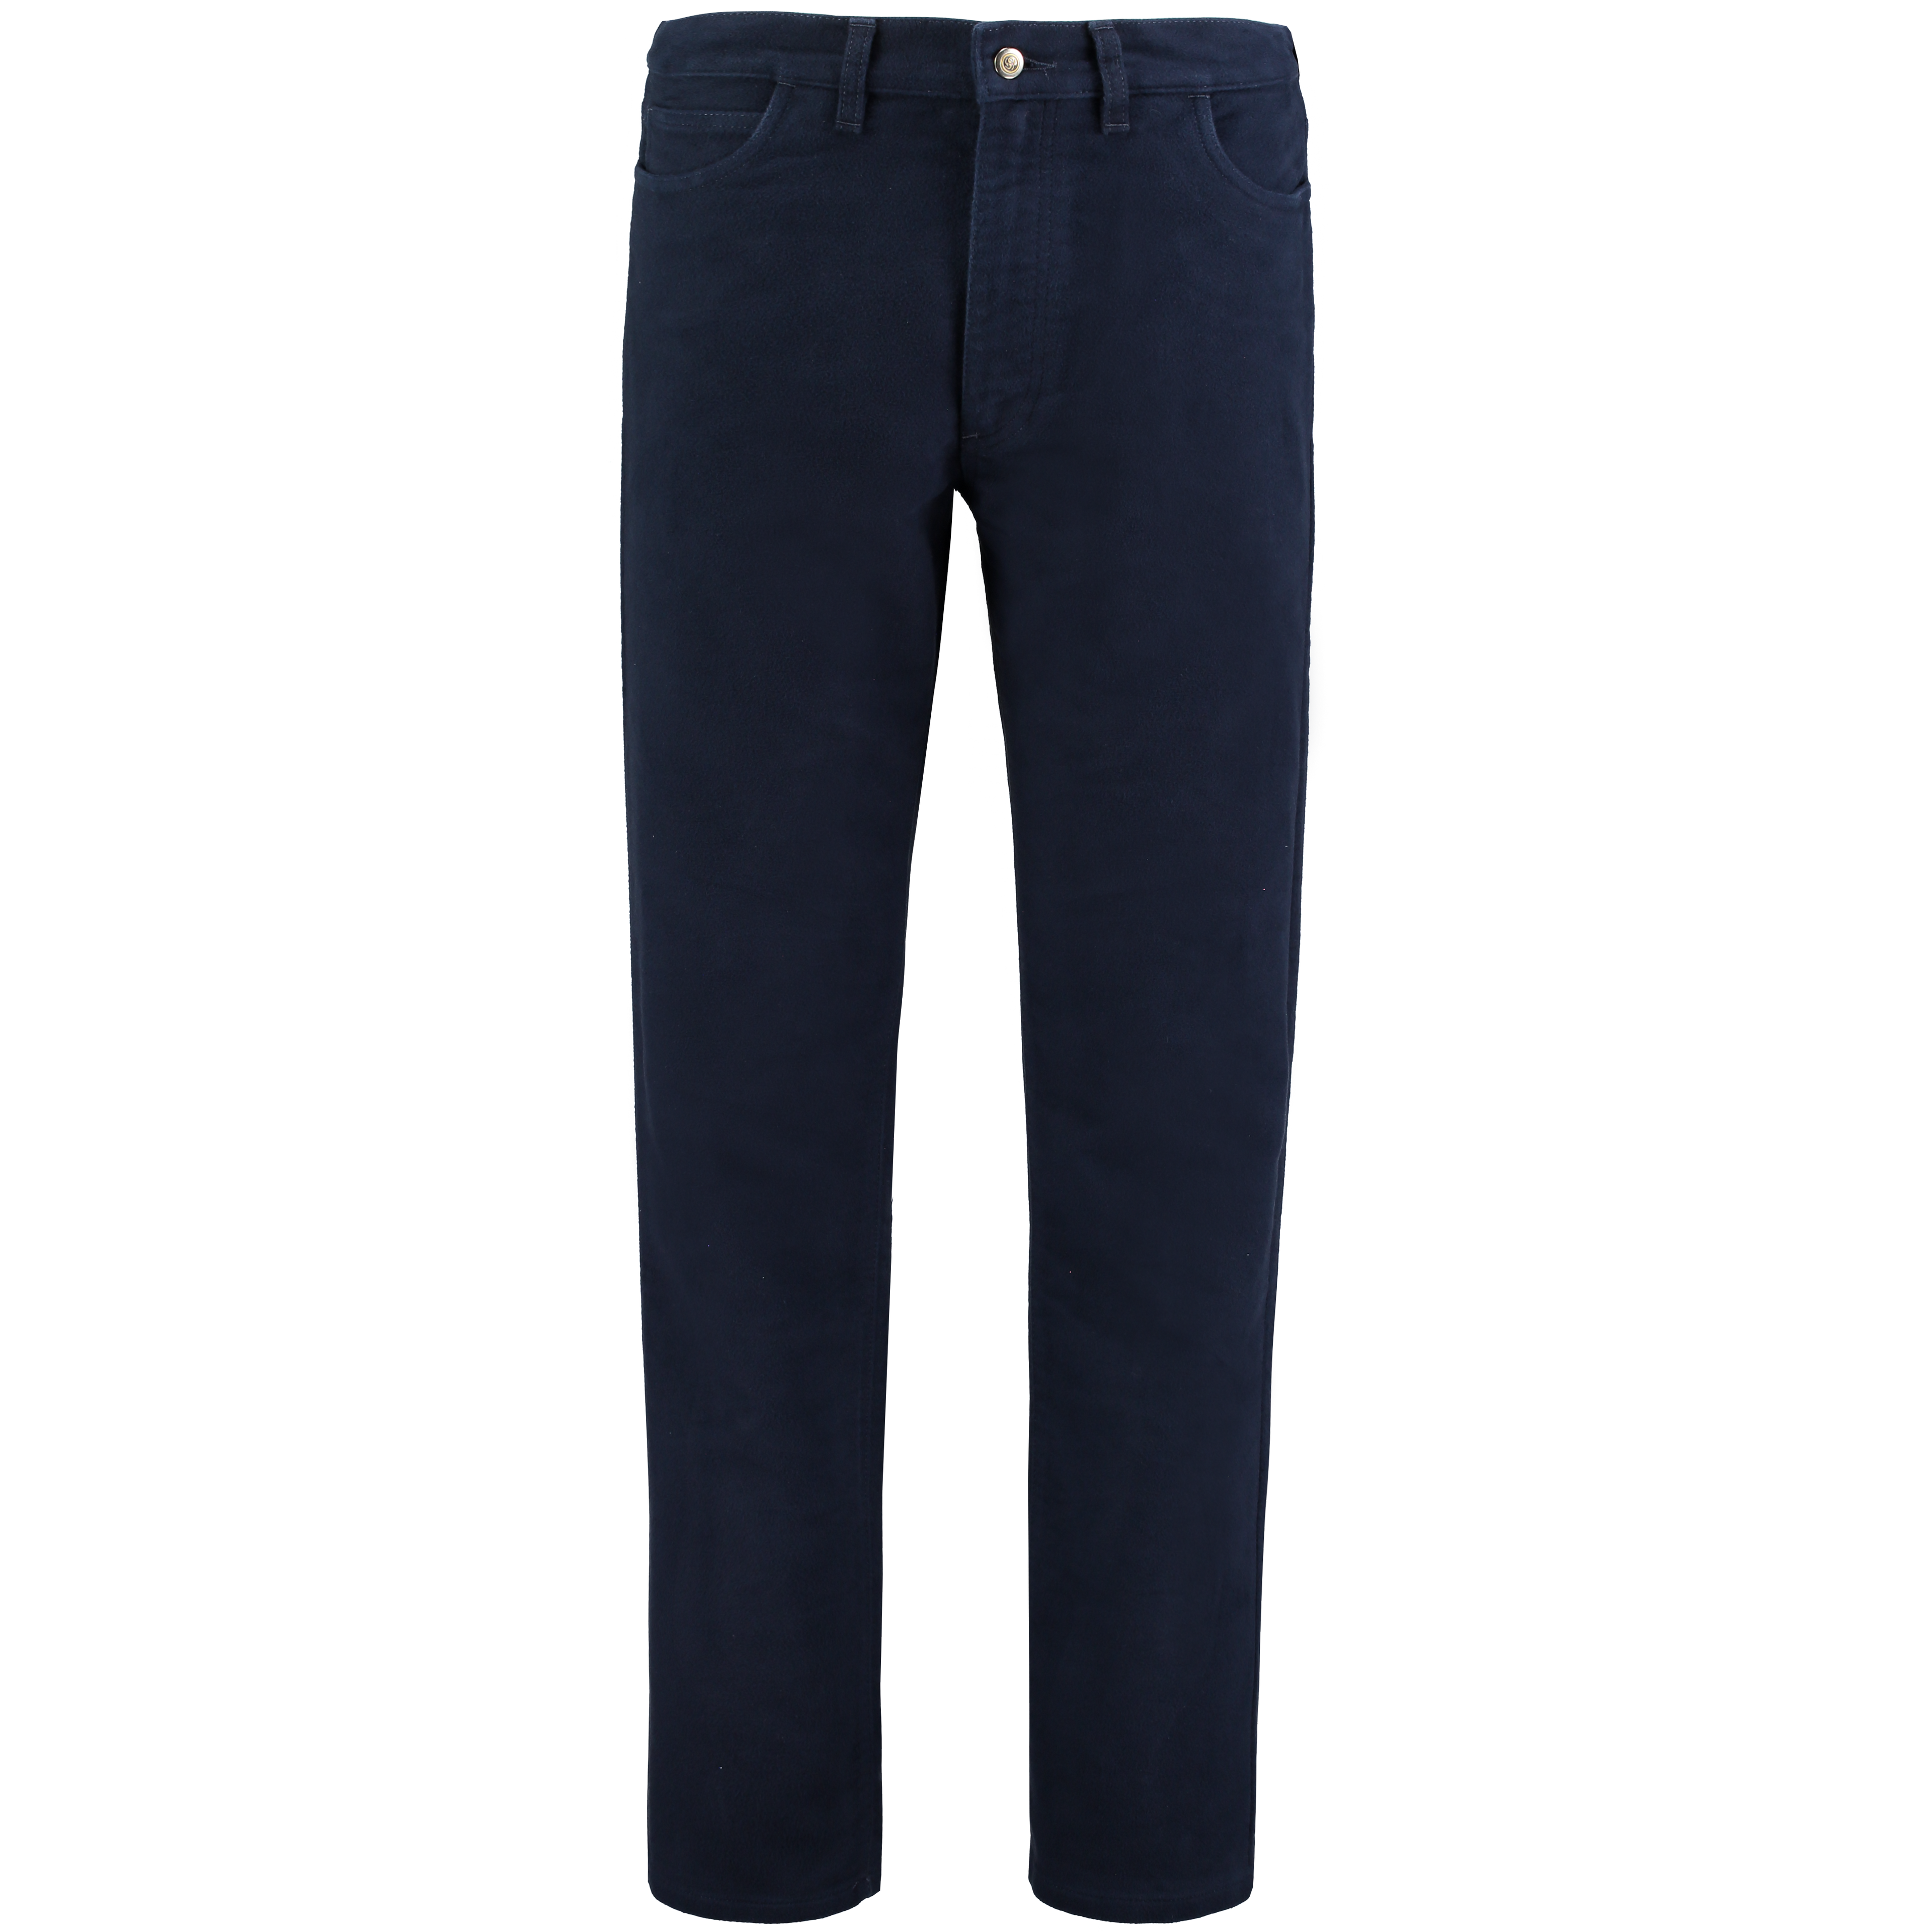 Wild Cotton Stonecutter Moleskin Jeans - Midnight